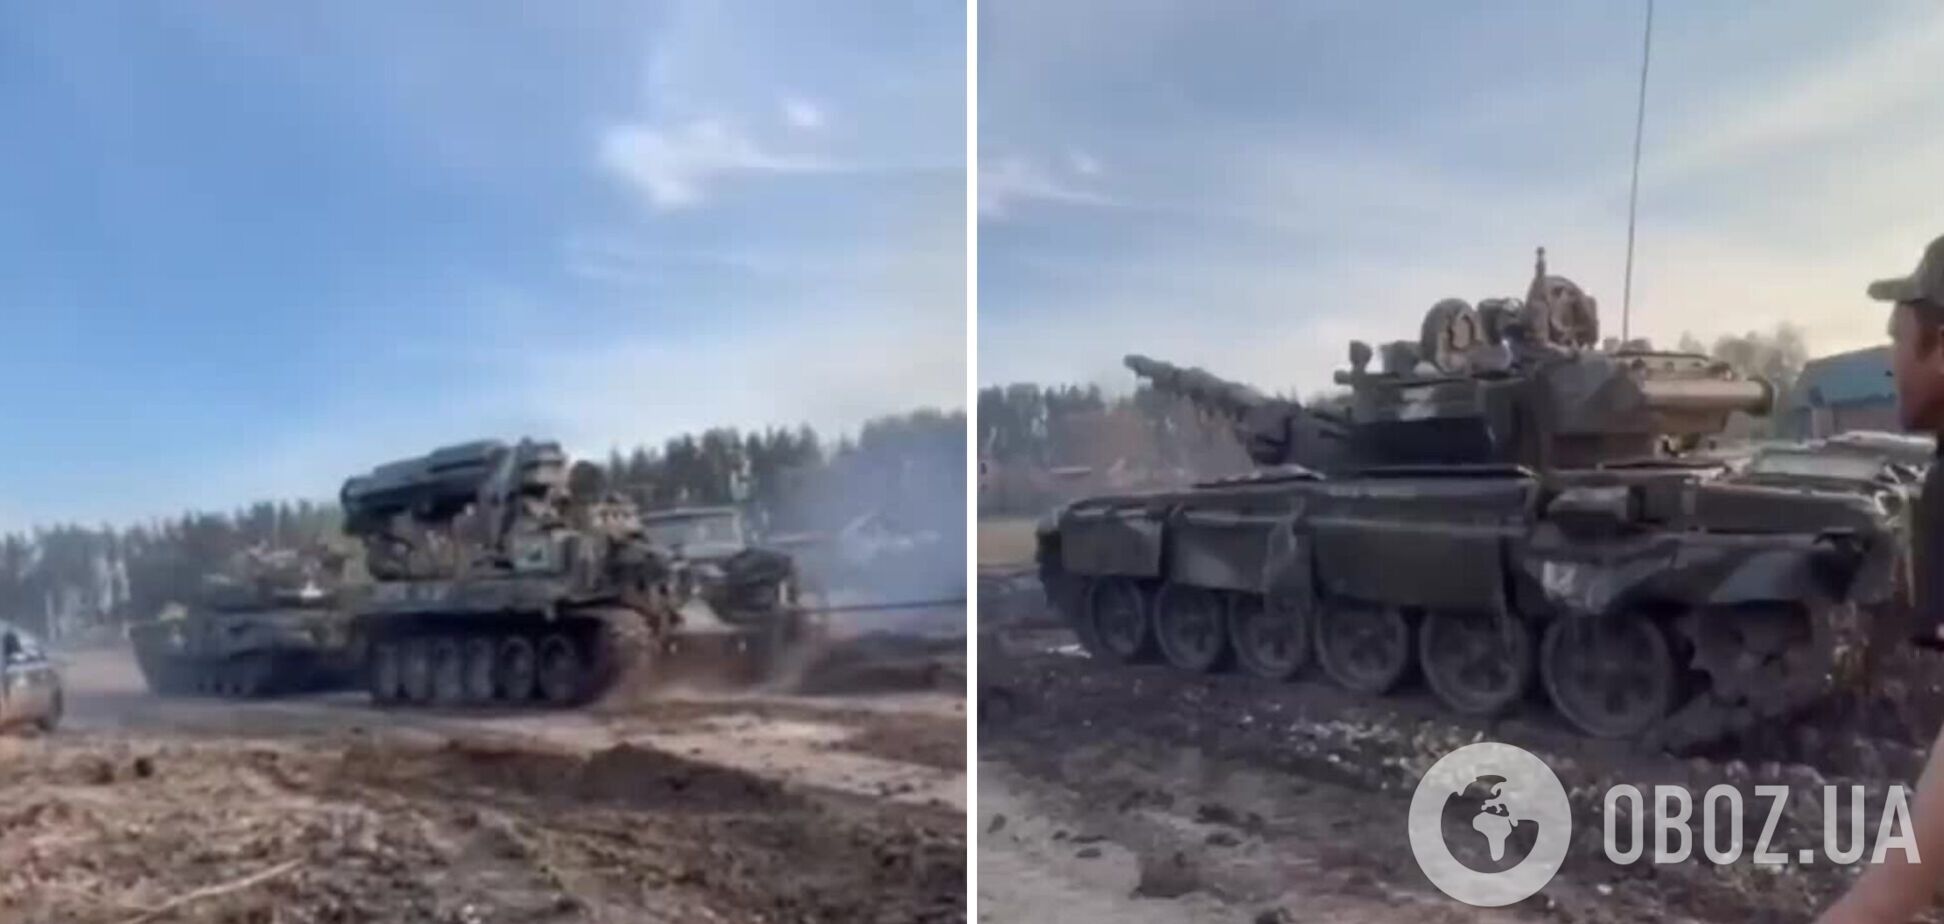 'Было их – стало наше': в Украине отремонтировали трофейный Т-90 и применяют его против оккупантов. Видео